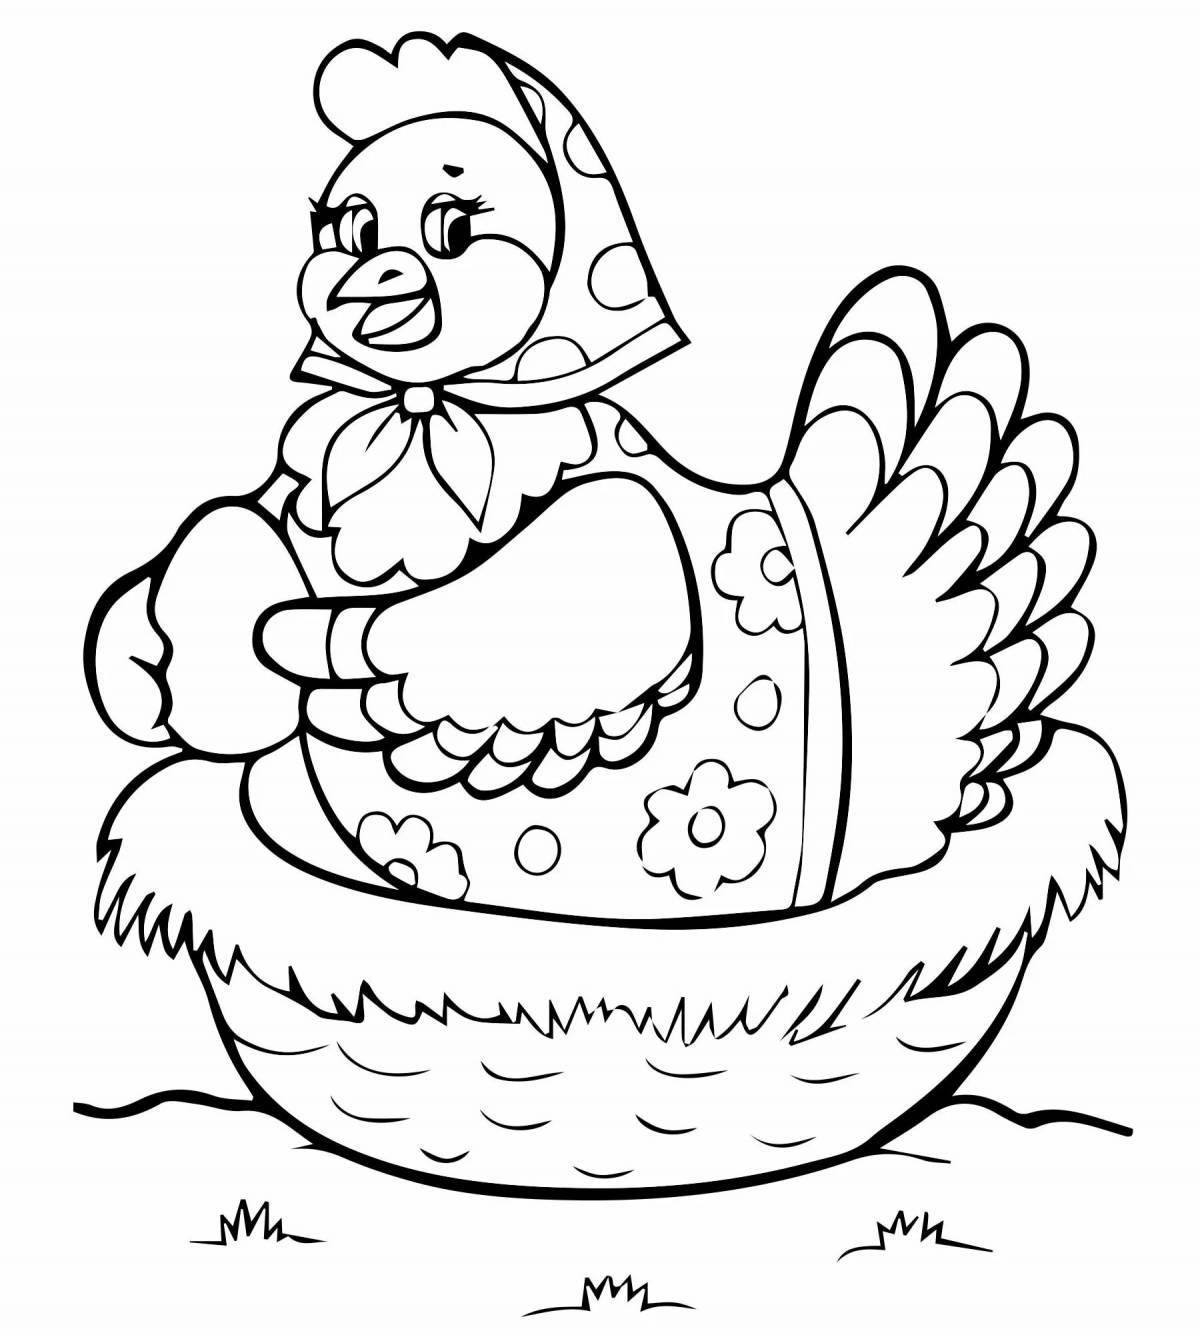 Раскраски с милыми цыплятами для детей 2-3 лет